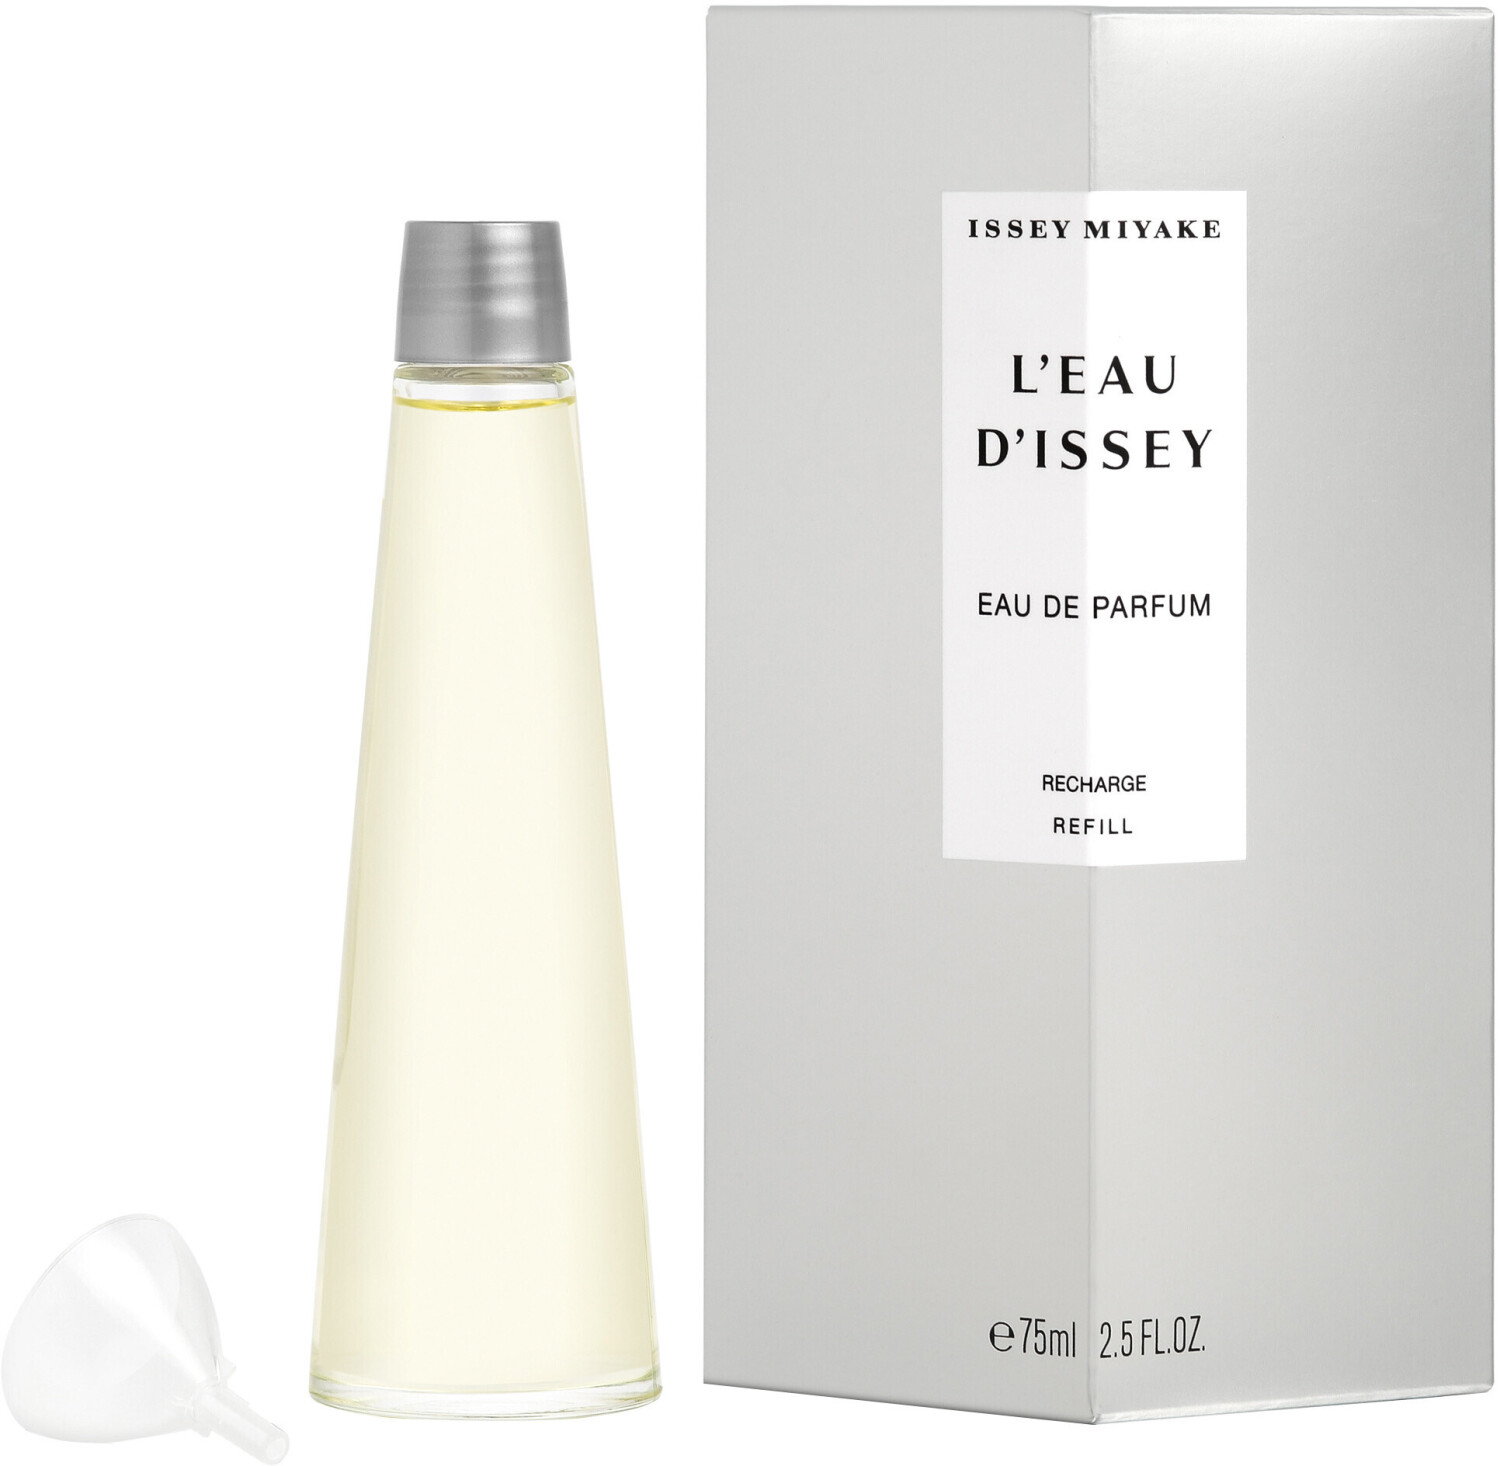 Issey Miyake L'eau d'Issey Eau de Parfum Nachfüllung (75ml) ab 52